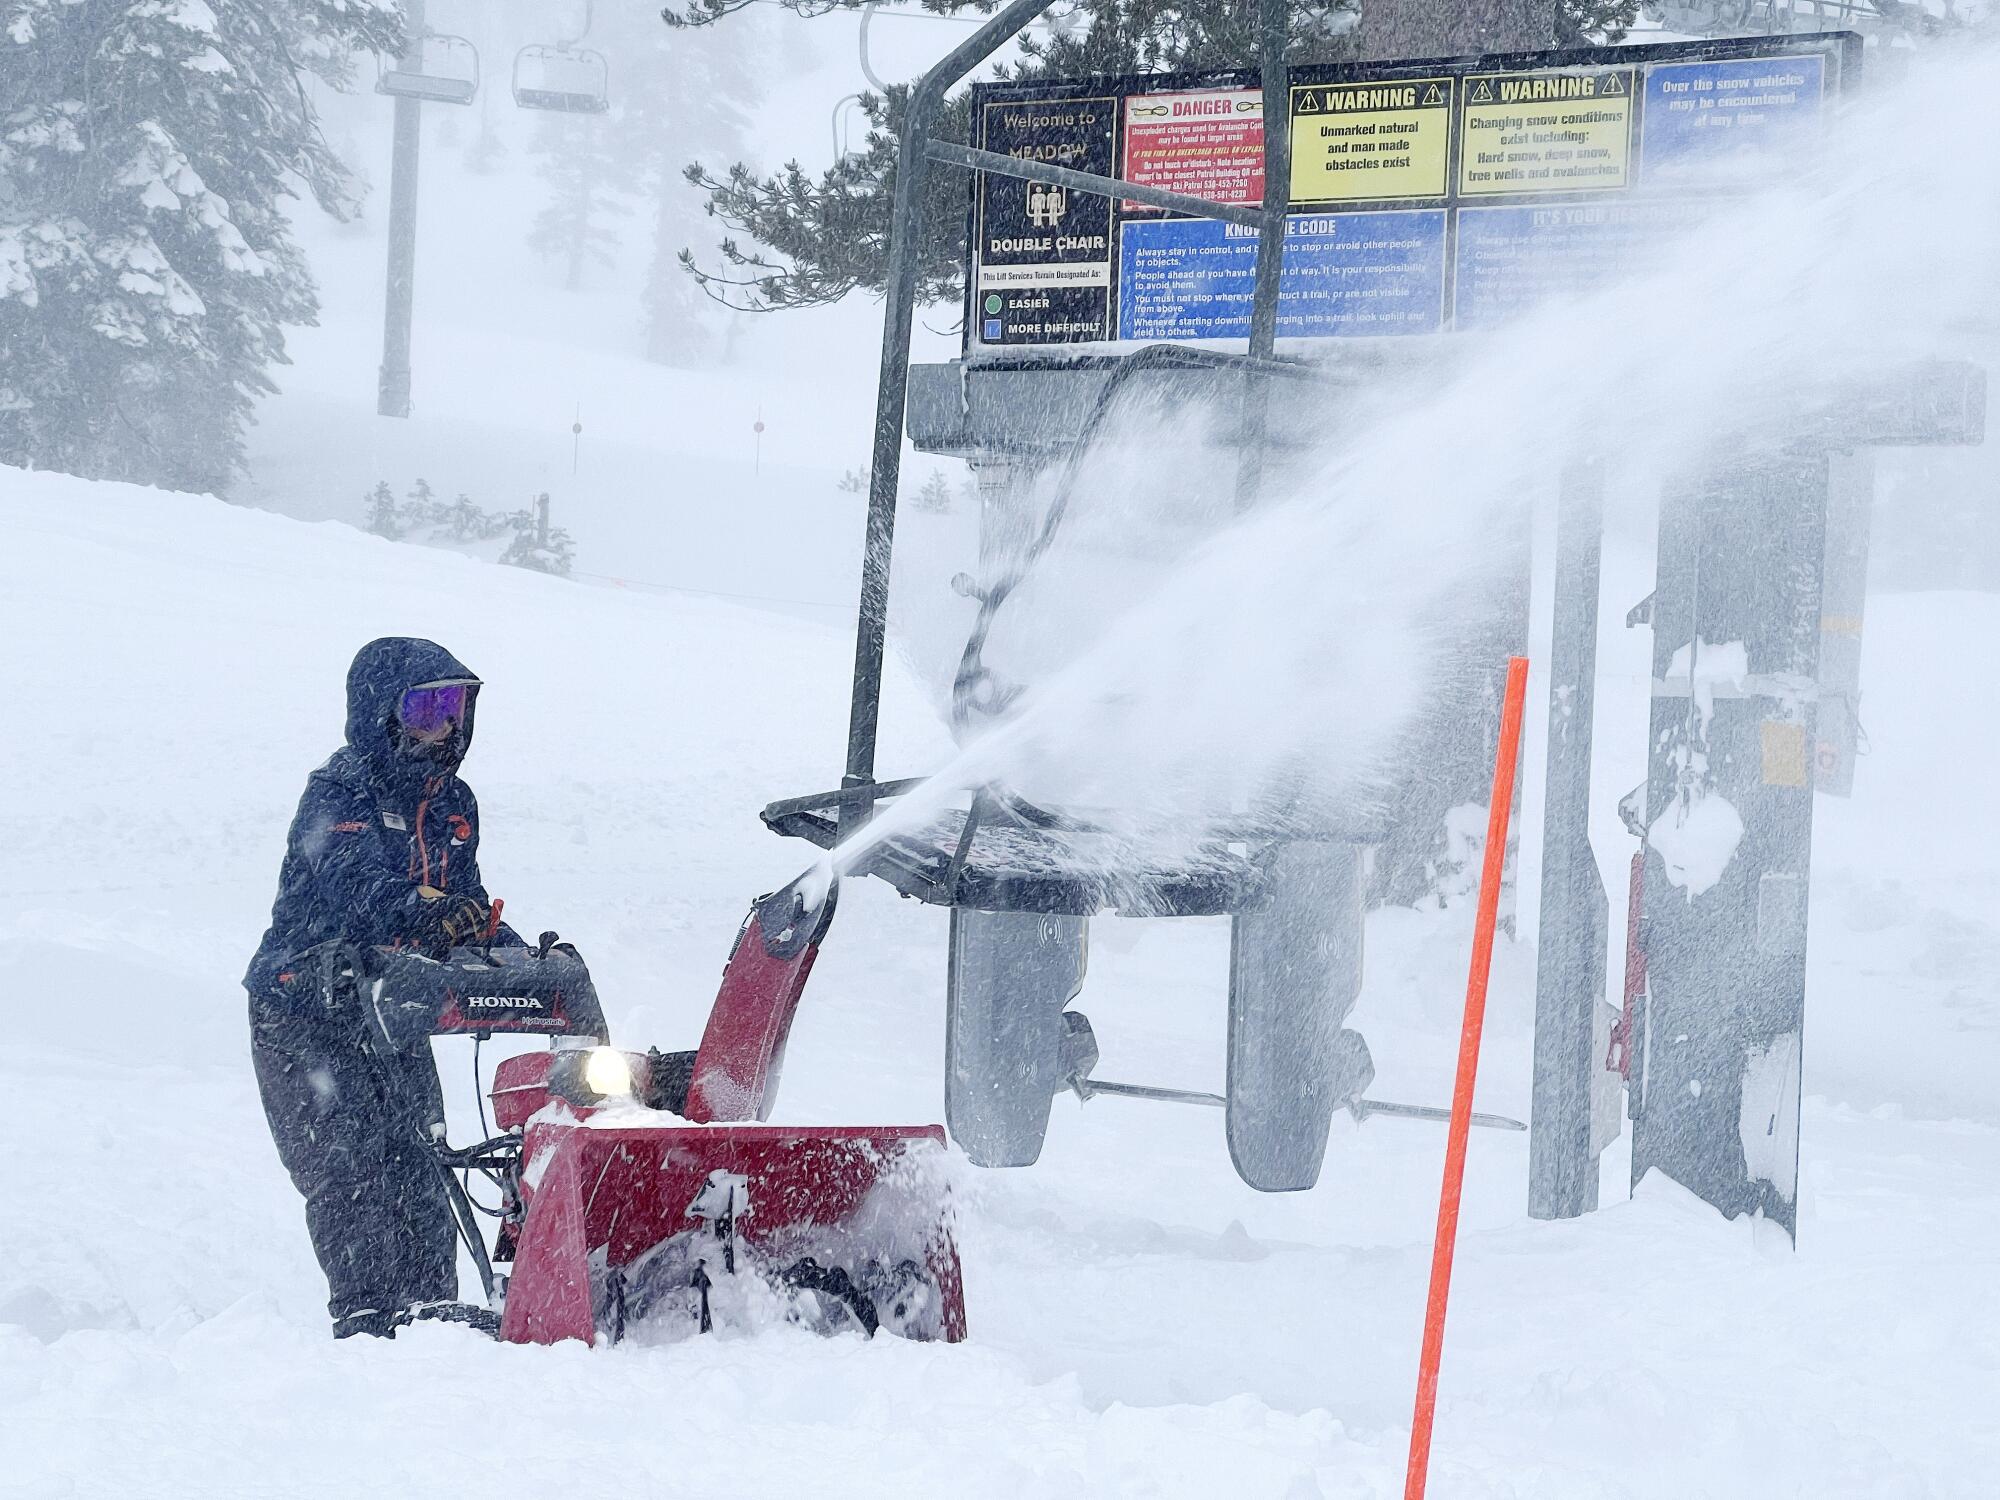 Un employé utilise une souffleuse à neige pour déneiger une station de ski à proximité d'un télésiège.